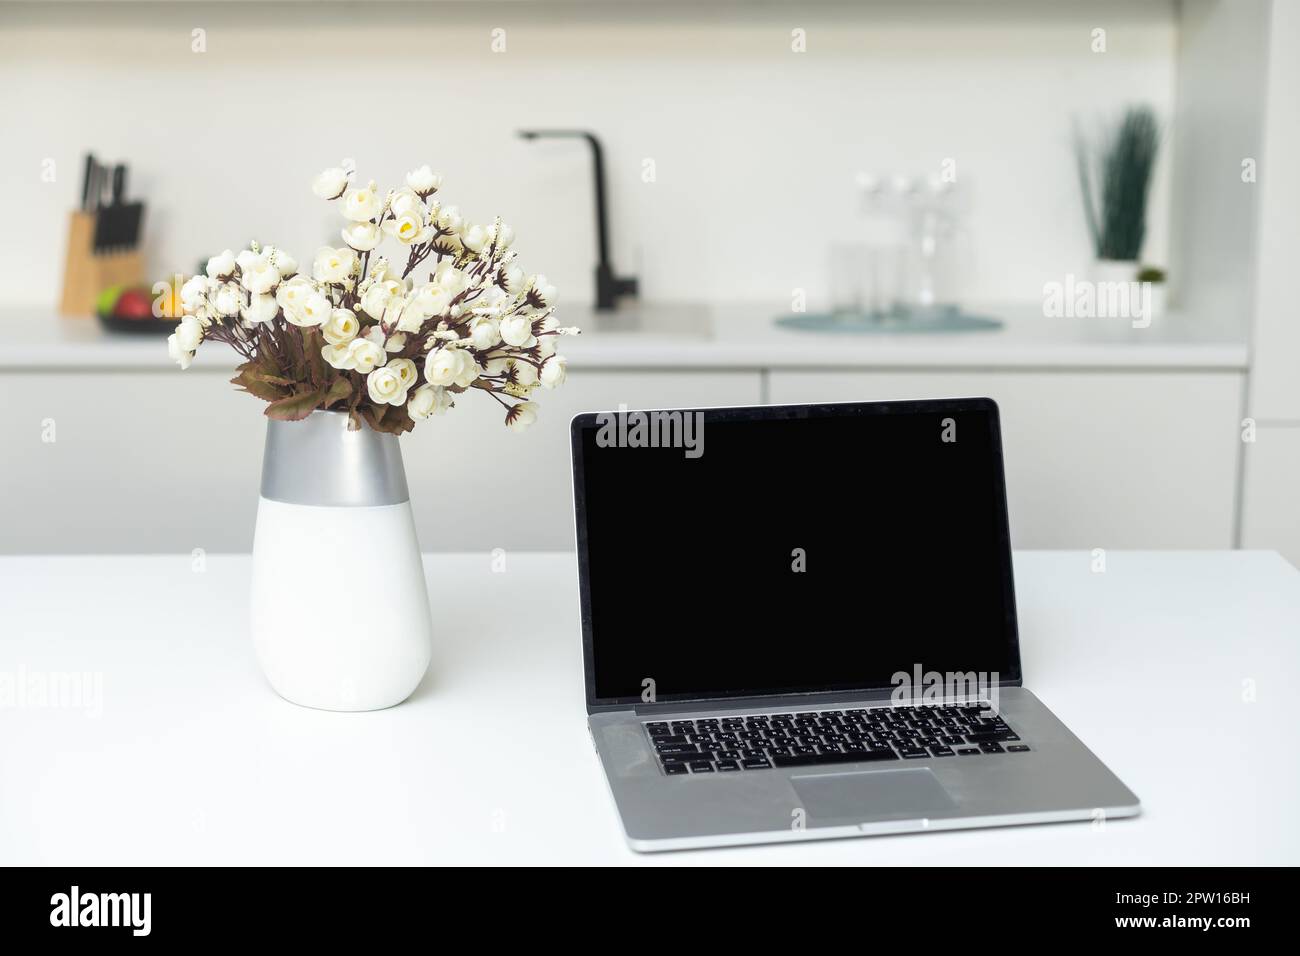 Concept culinaire des médias sociaux, vue de face d'un ordinateur portable et d'ustensiles sur le comptoir de cuisine moderne Banque D'Images